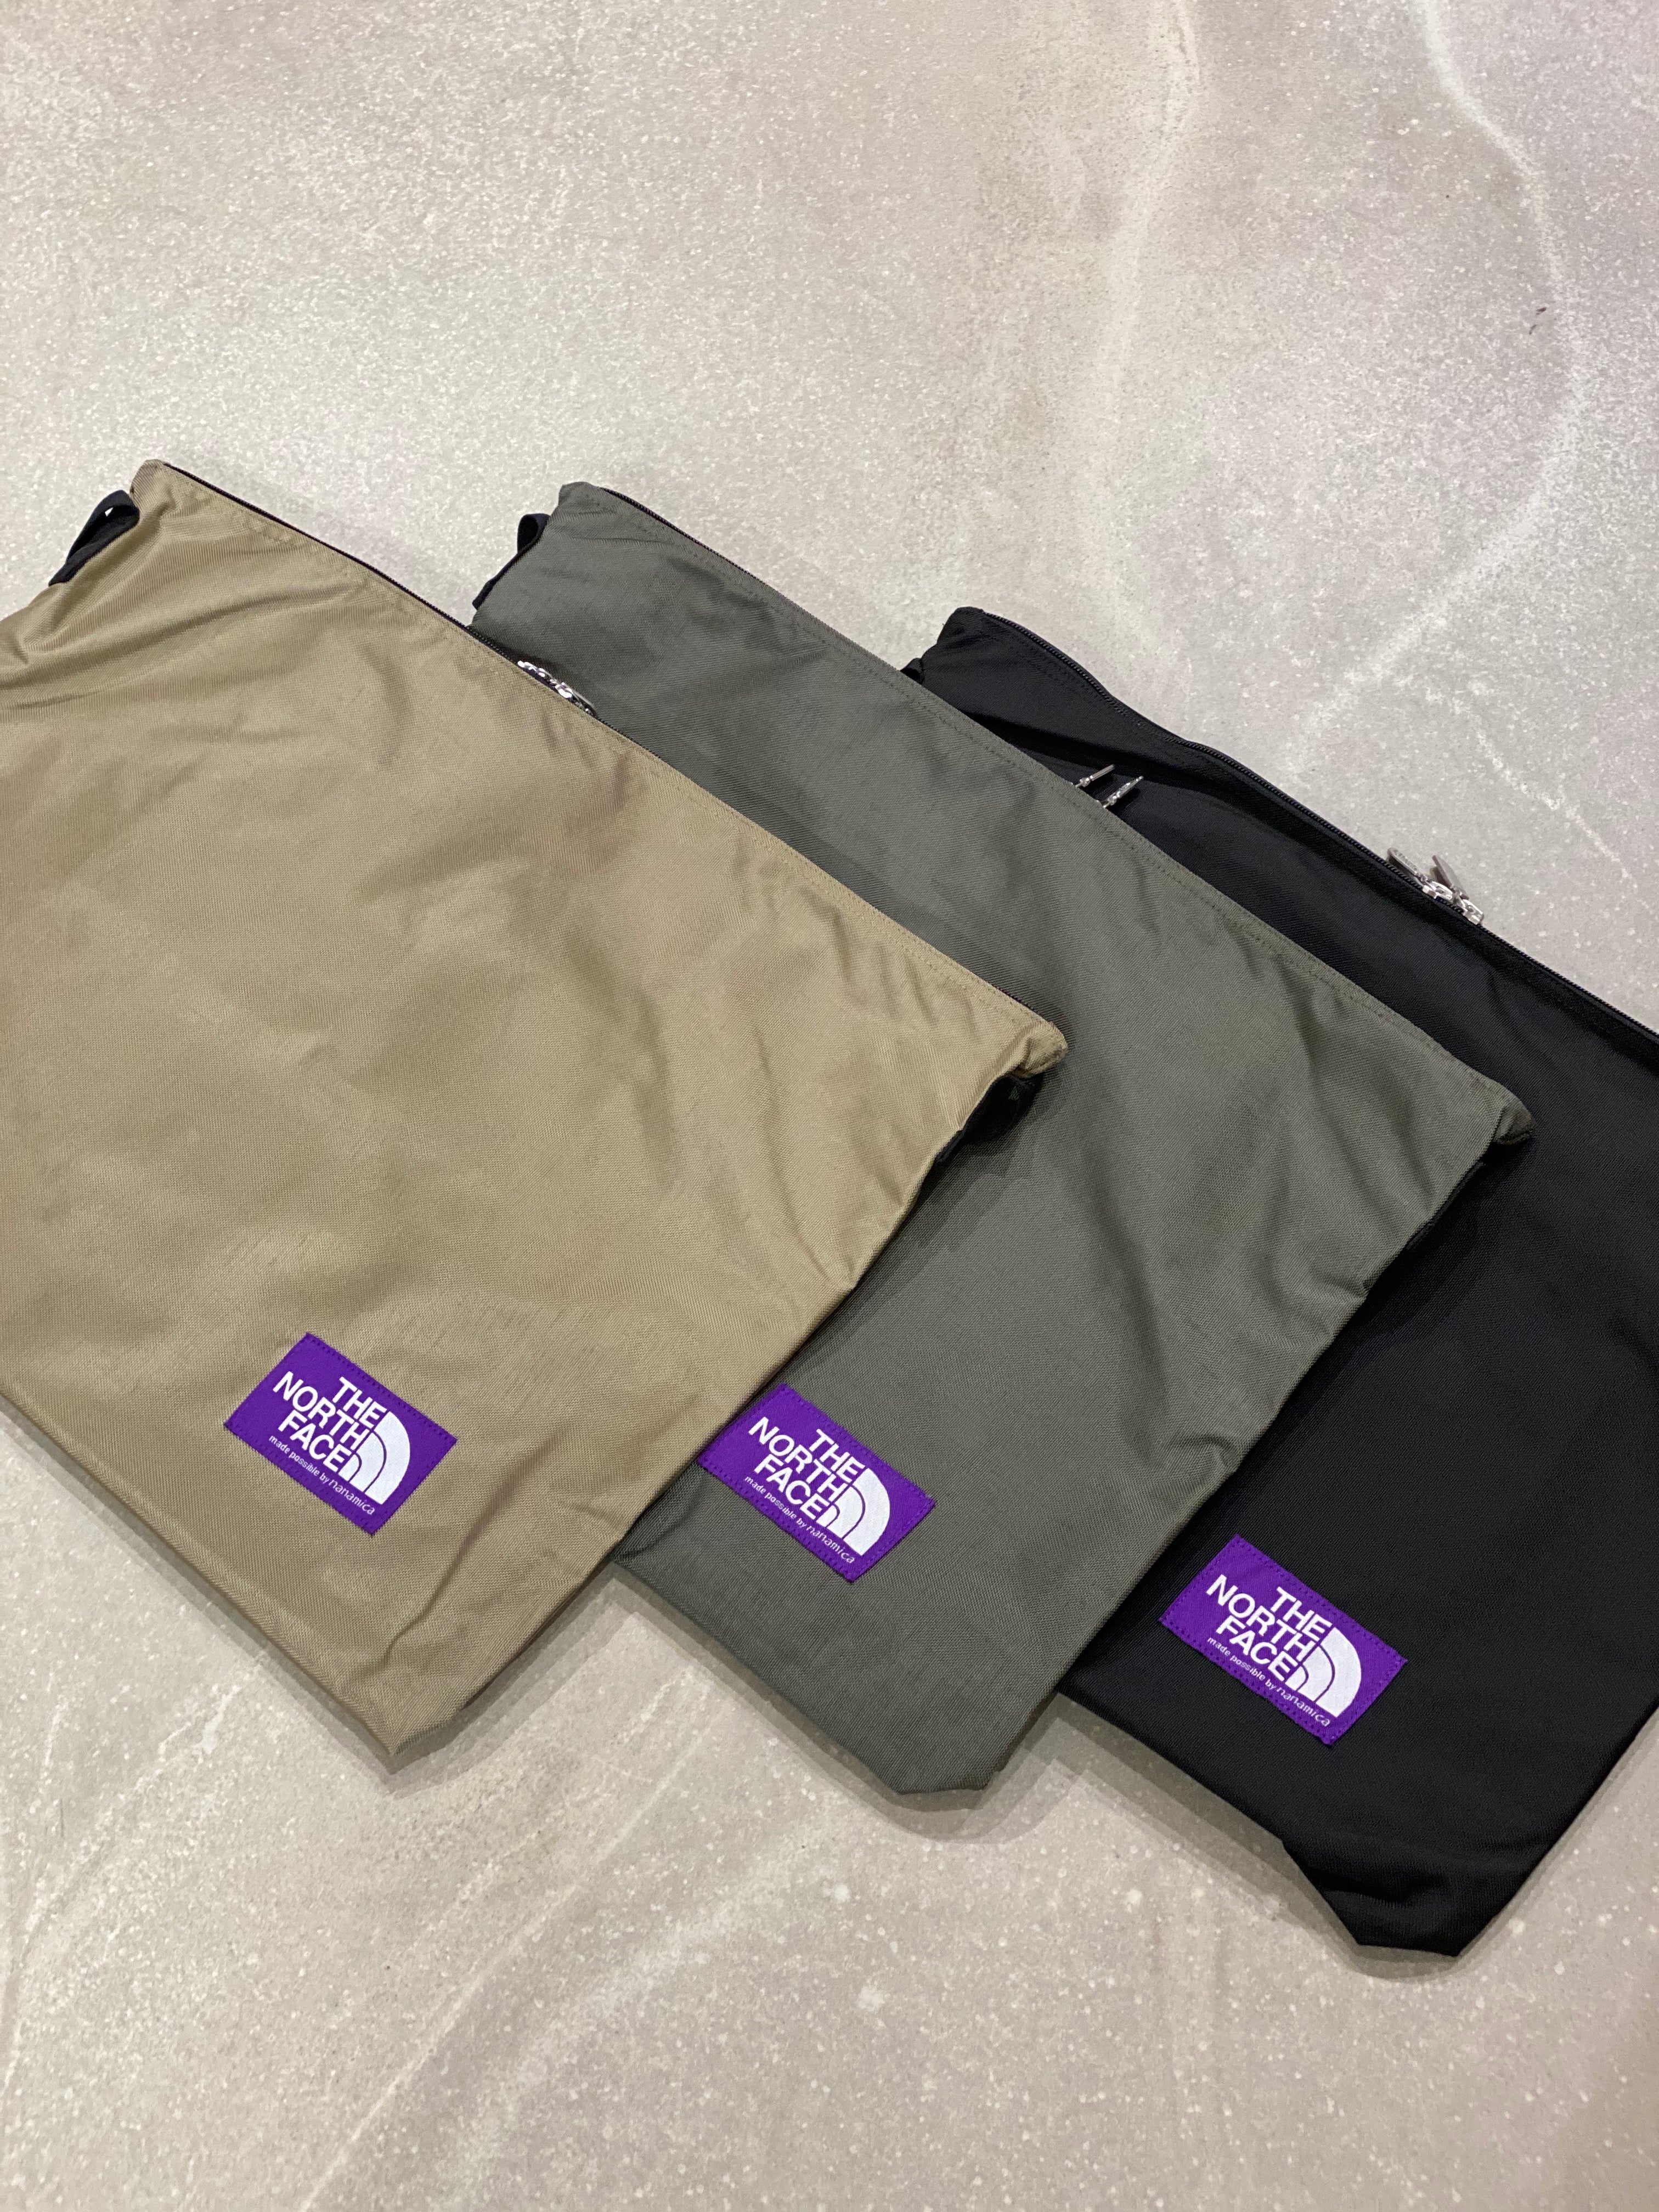 Shoulder Bag, NN7754N_, Dark Beige, Sage Green, Black, $95, The North Face Purple Label